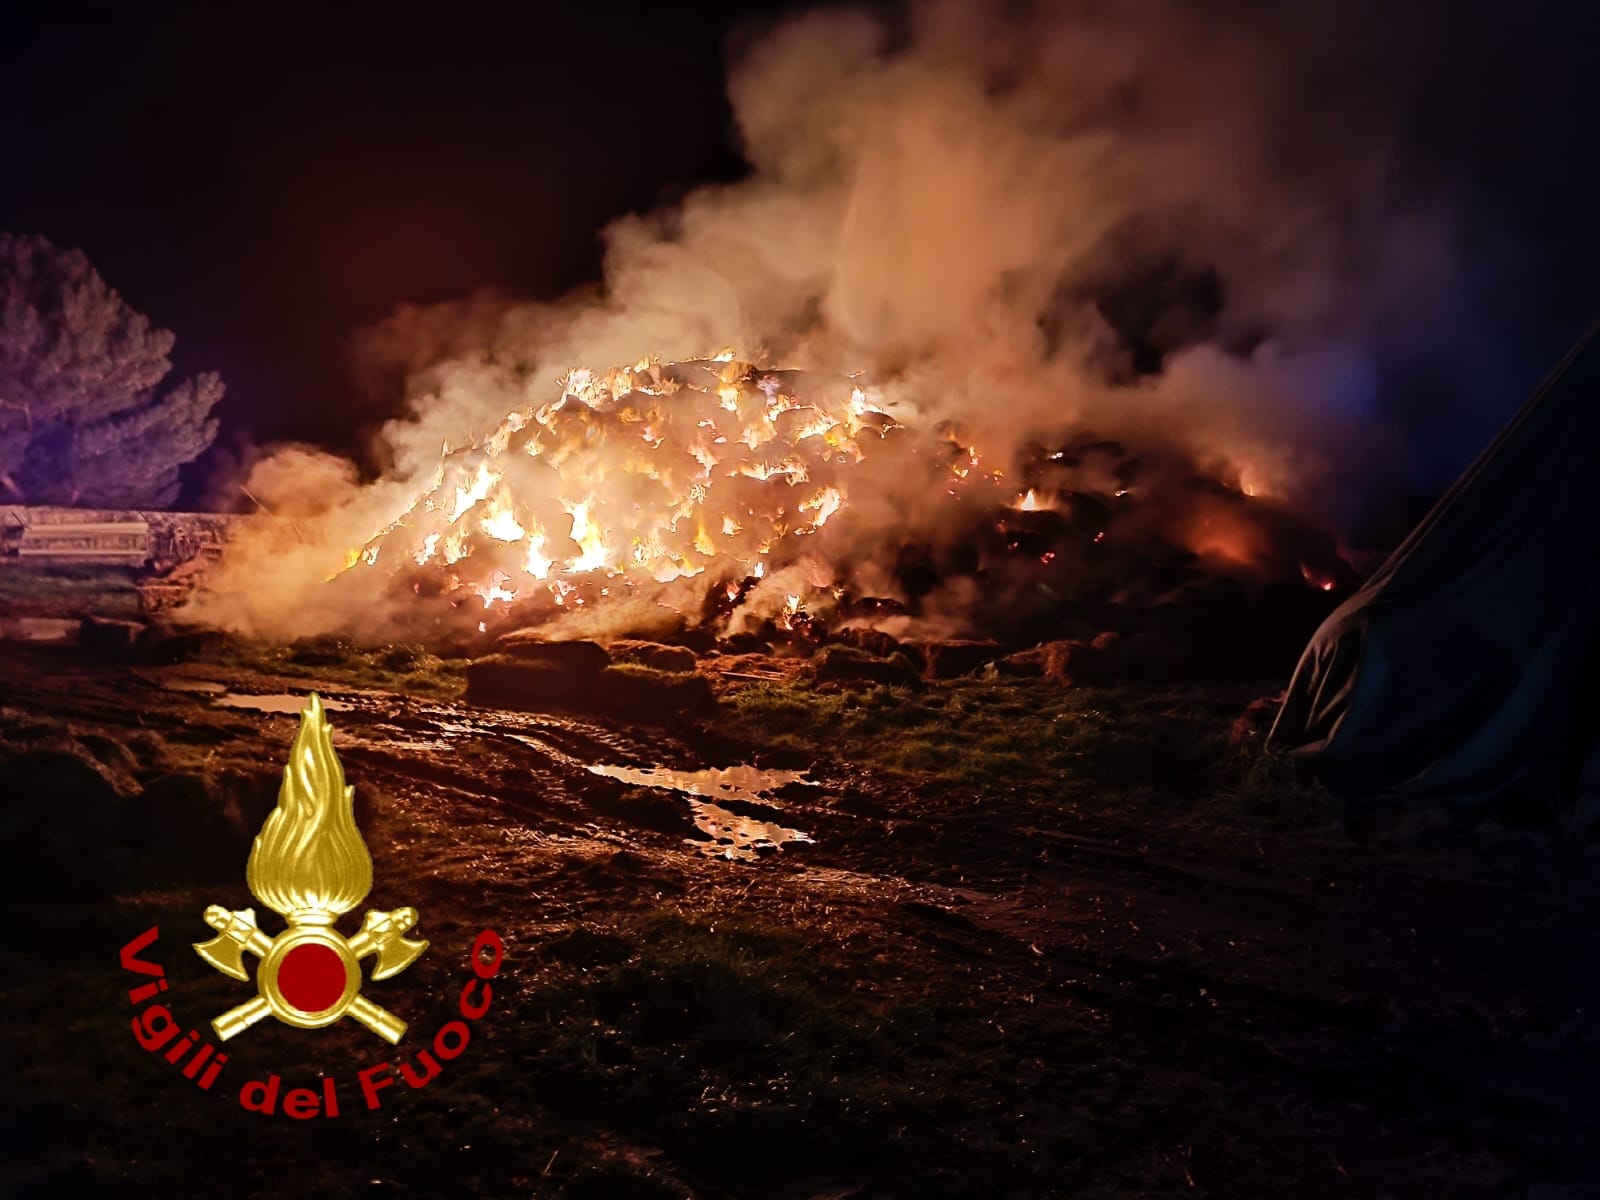 Notte di fuoco a Siligo: distrutto un fienile. I Vigili del fuoco mettono in salvo oltre 5mila balle di fieno